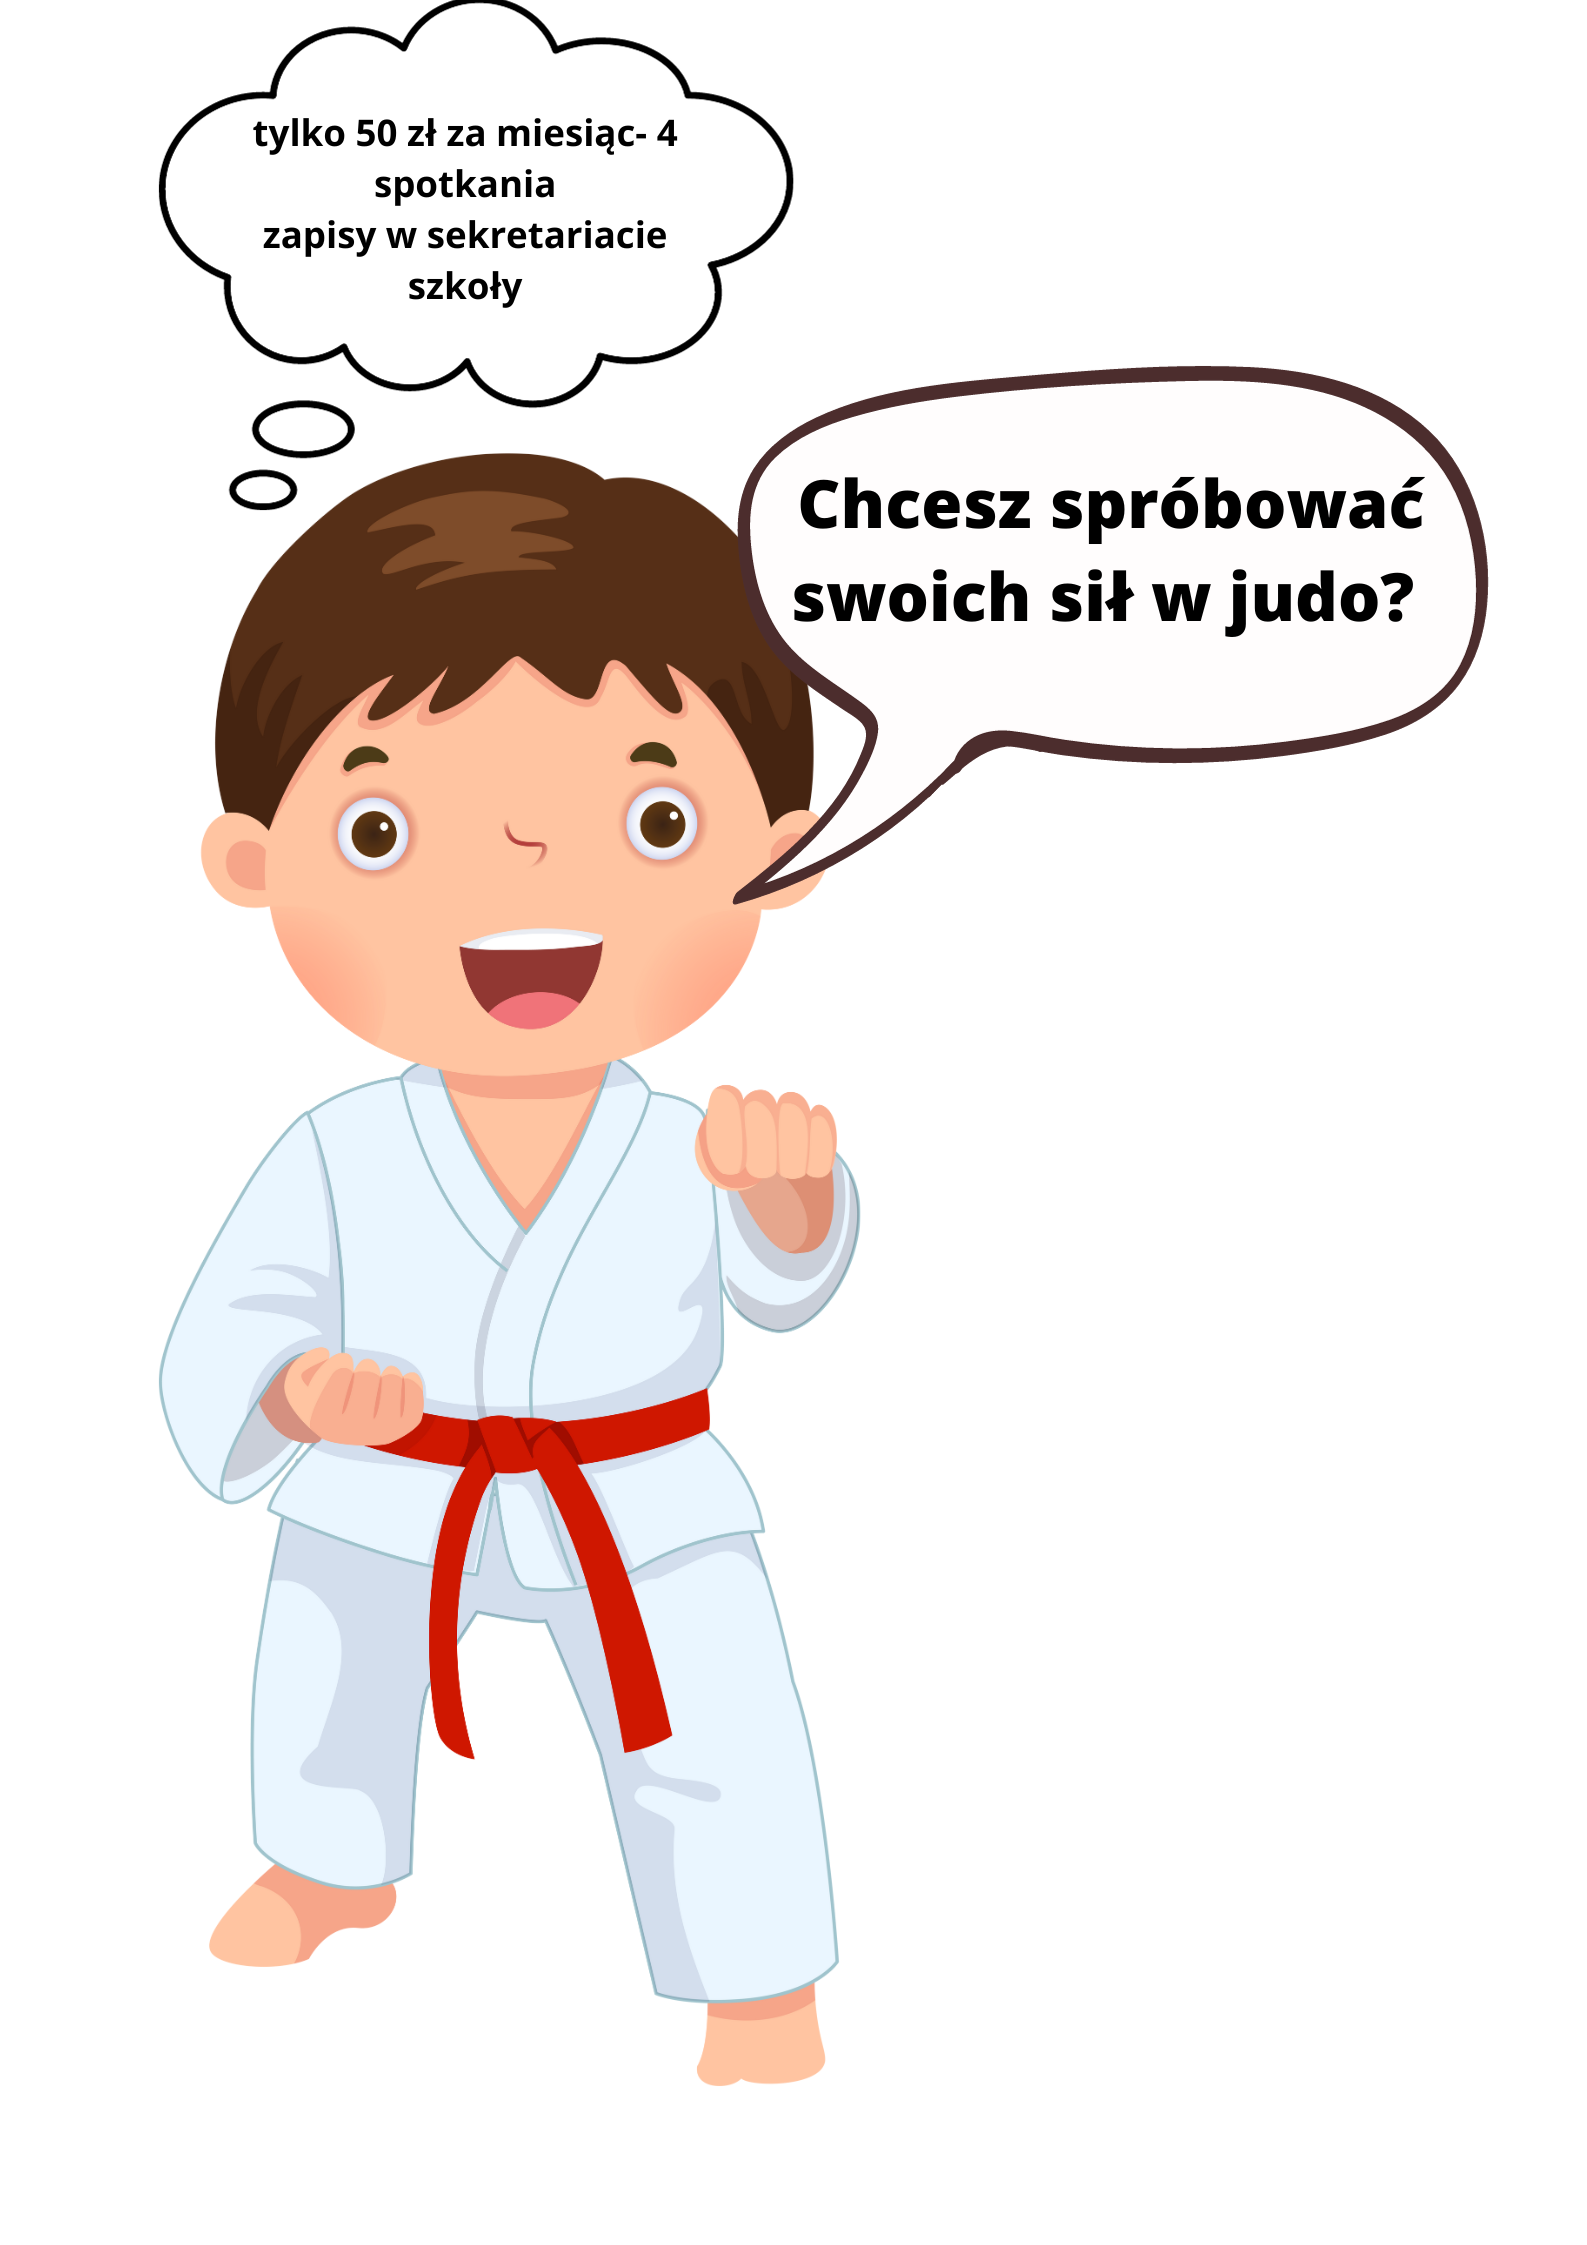 Judo w szkole